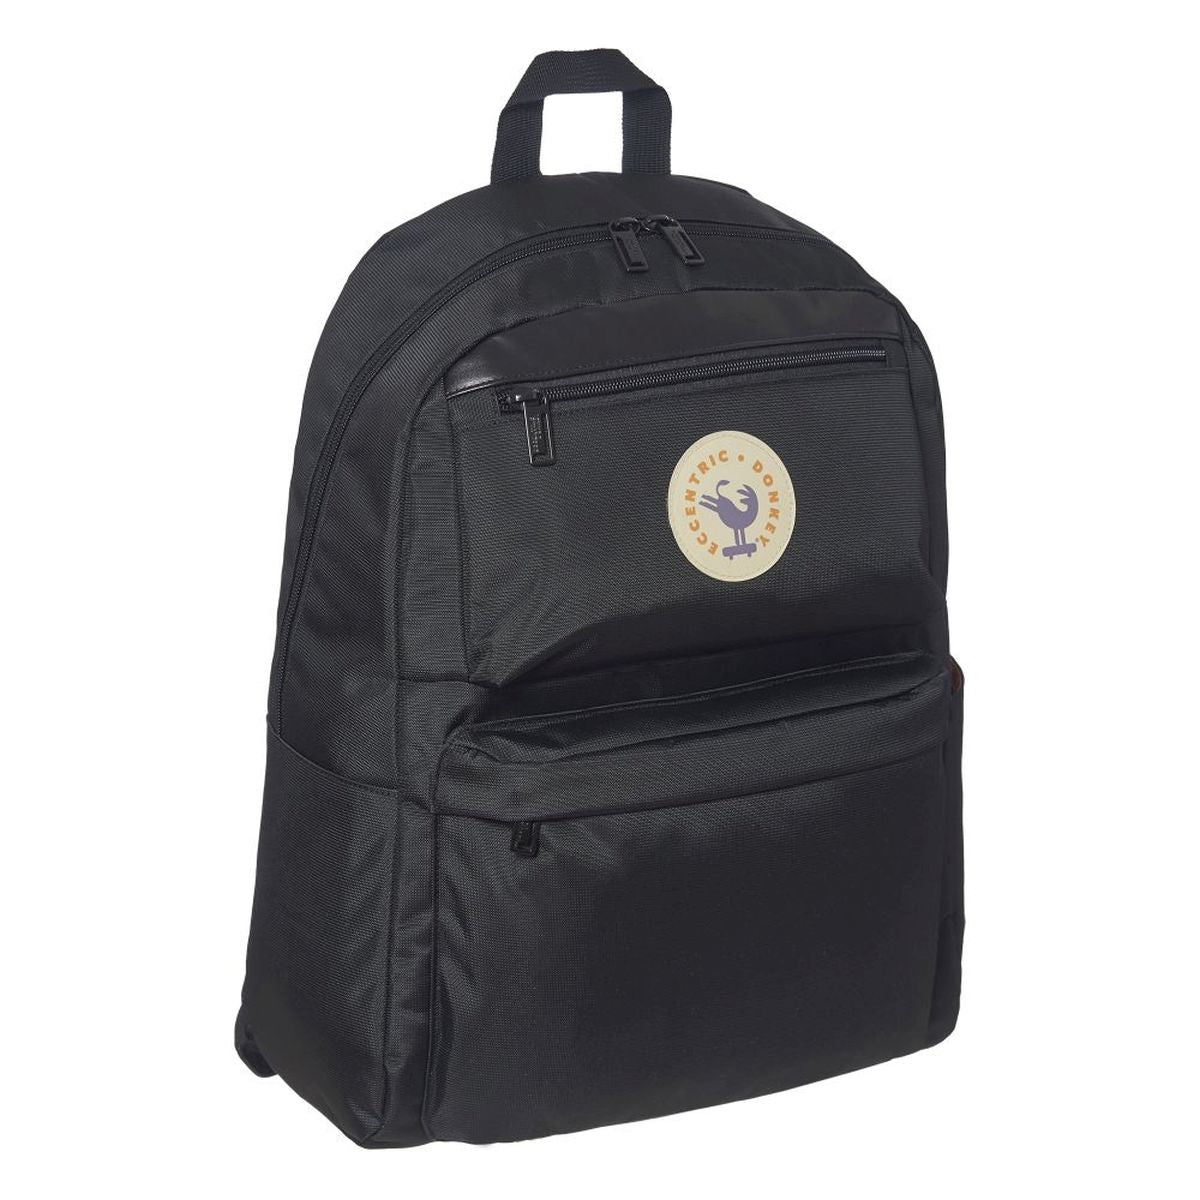 Backpack Mallorquin Basic Black